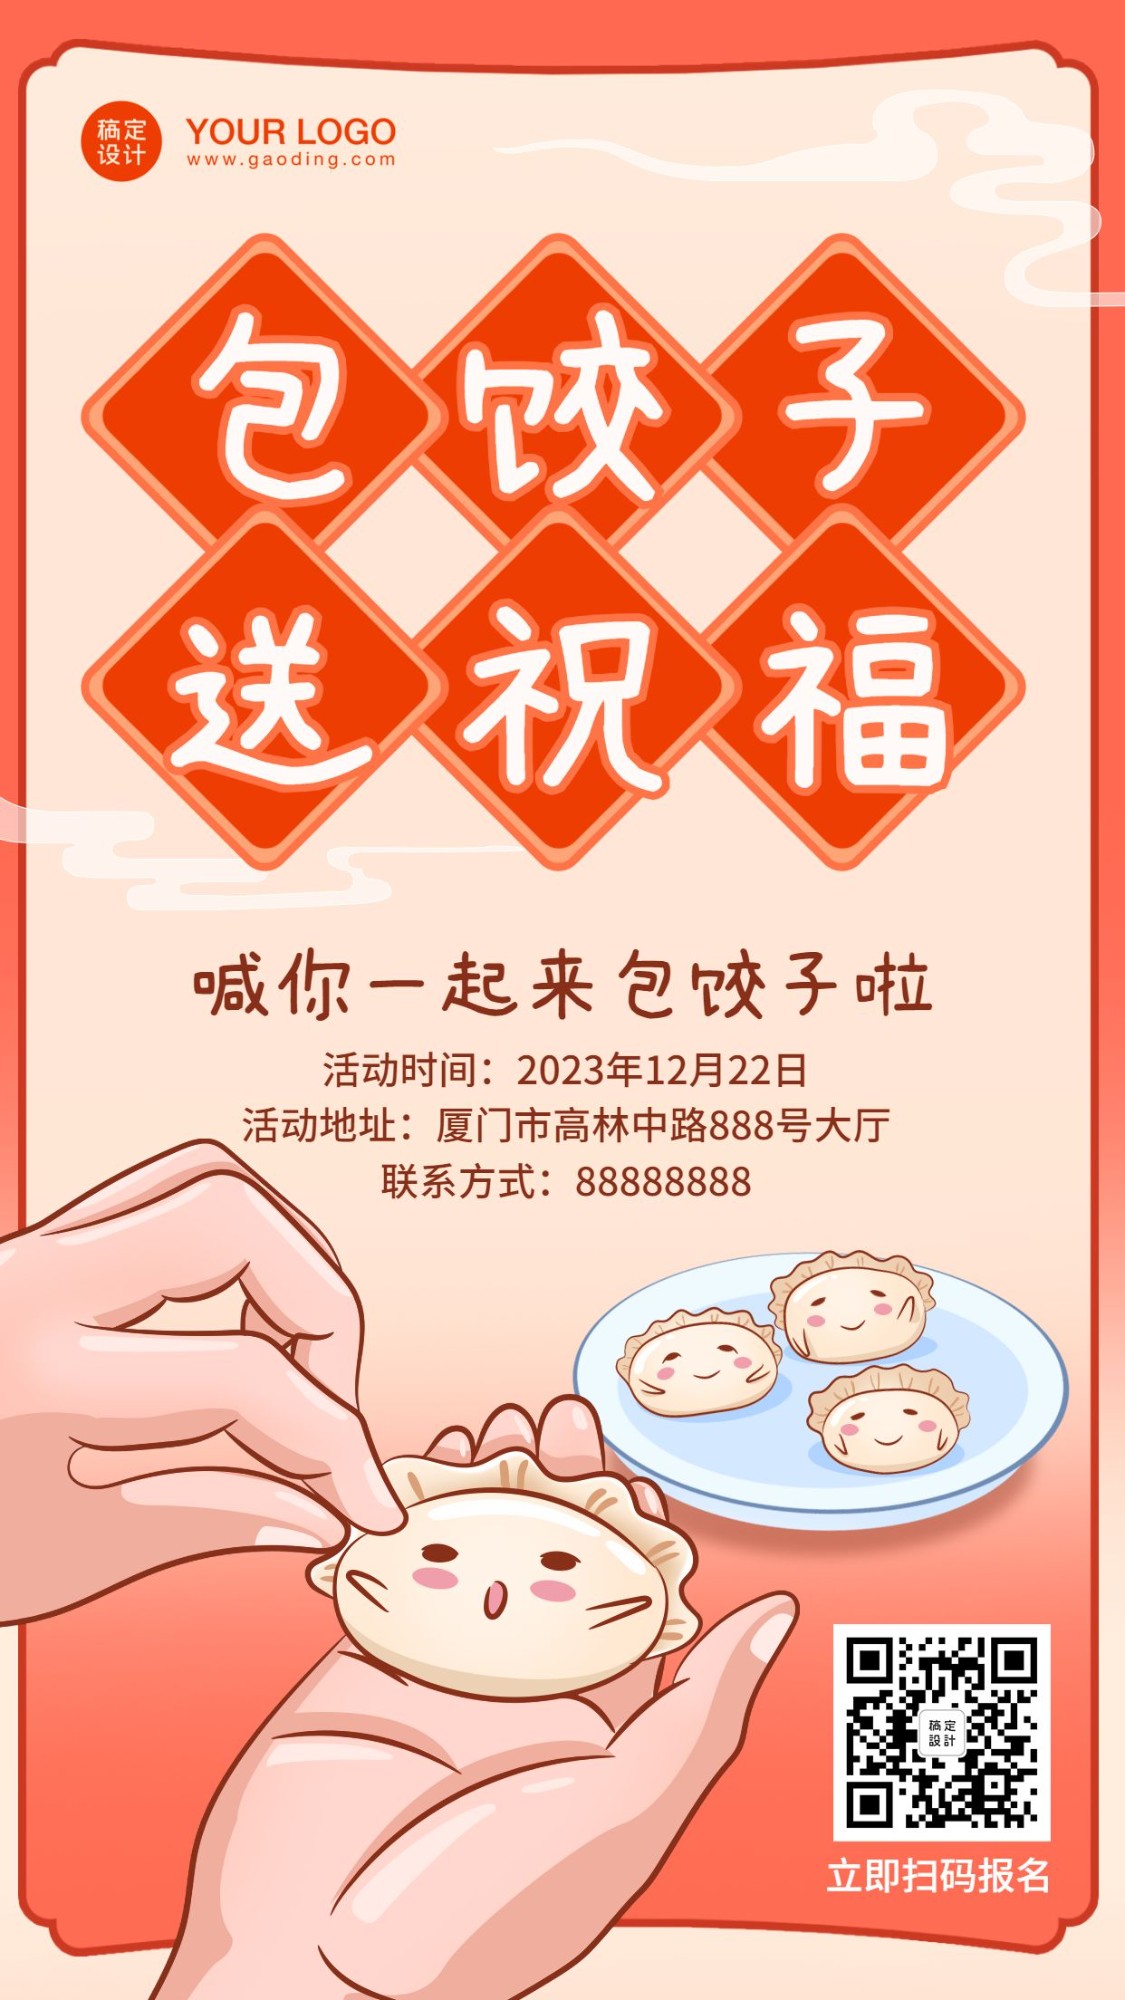 冬至节气饺子产品活动营销促销手机海报预览效果